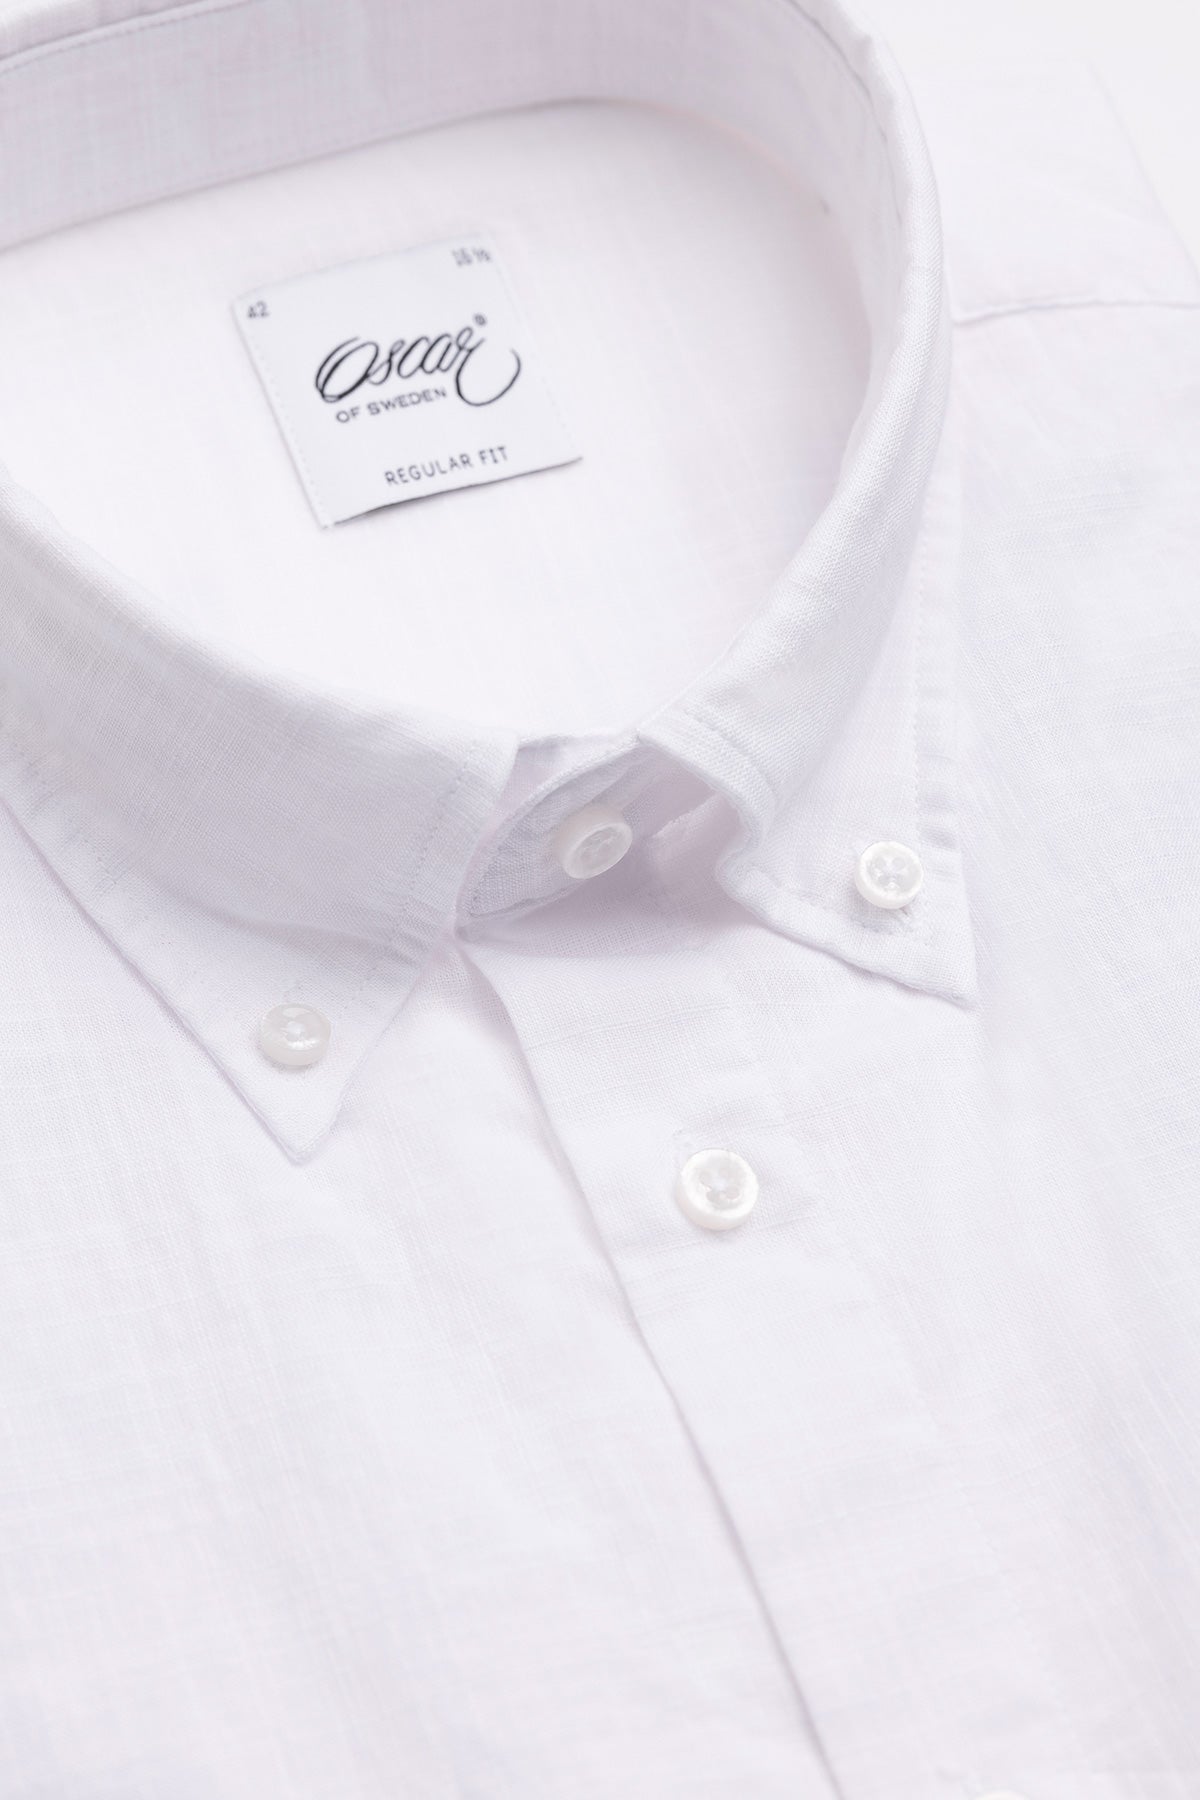 White button down short sleeve regular fit shirt